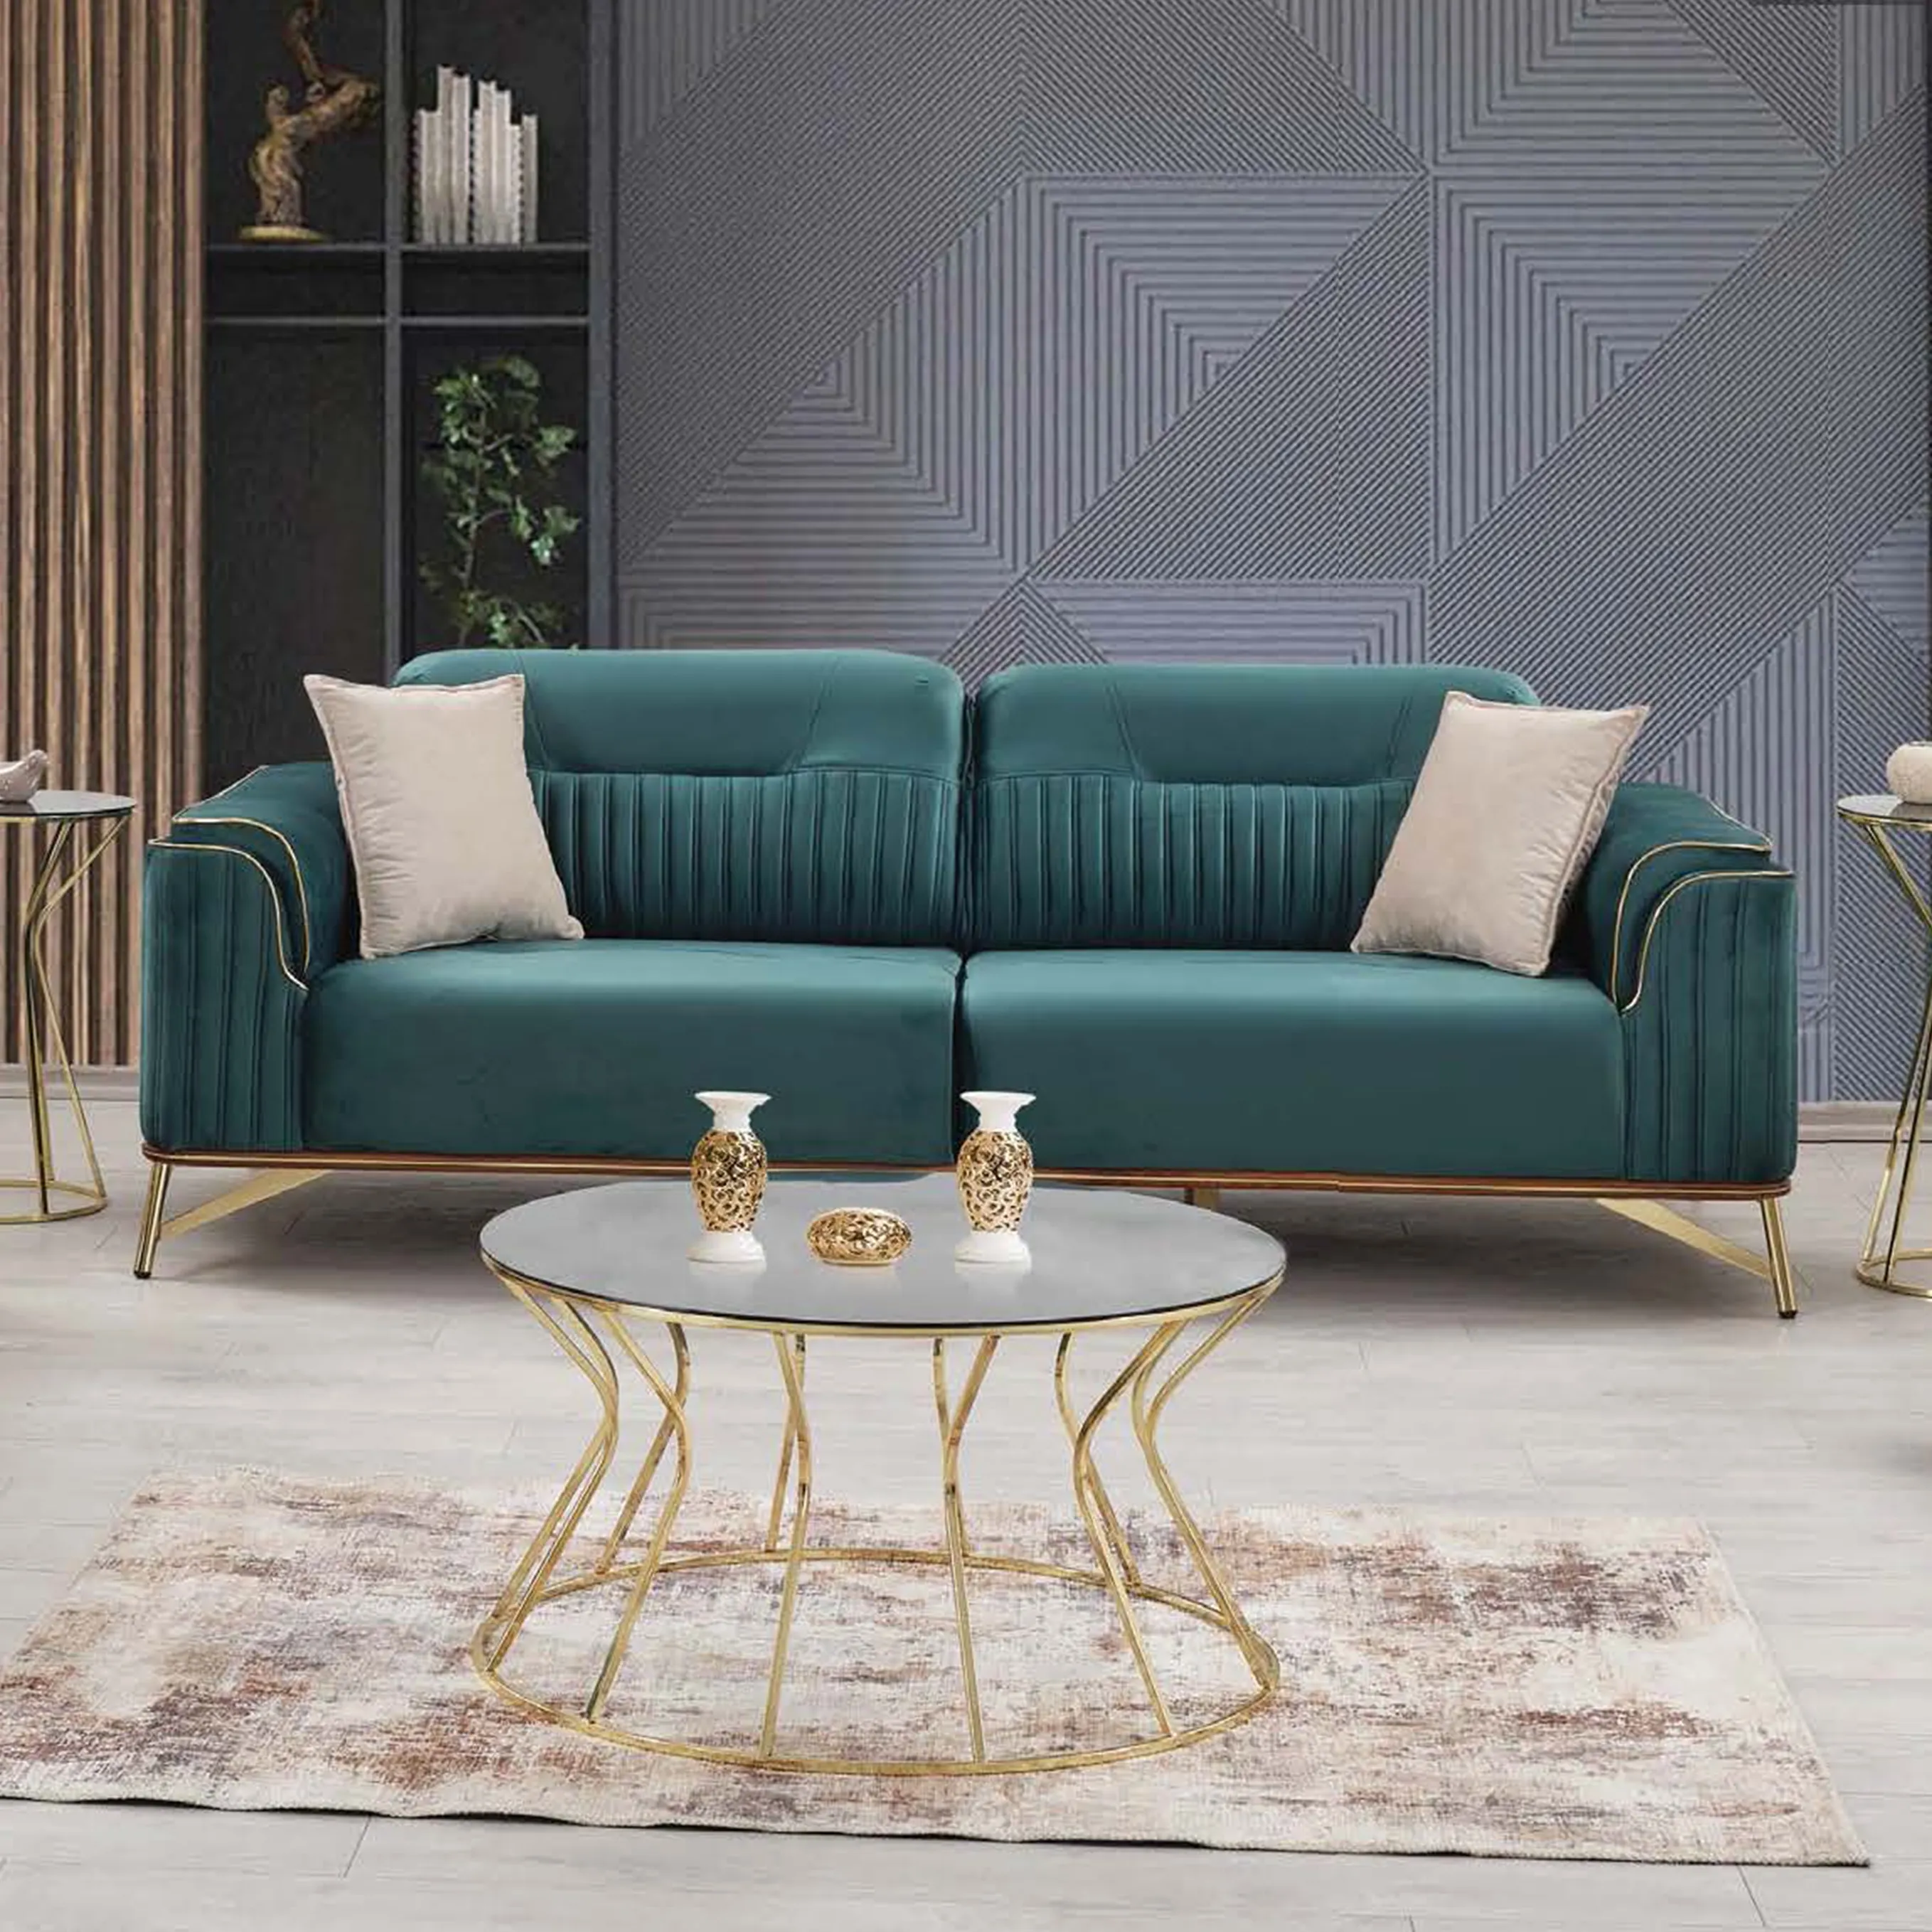 Juego de muebles de sala de estar modernos sofá cama terciopelo verde tela inoxidable muebles turcos Chesterfield entrenador con cama